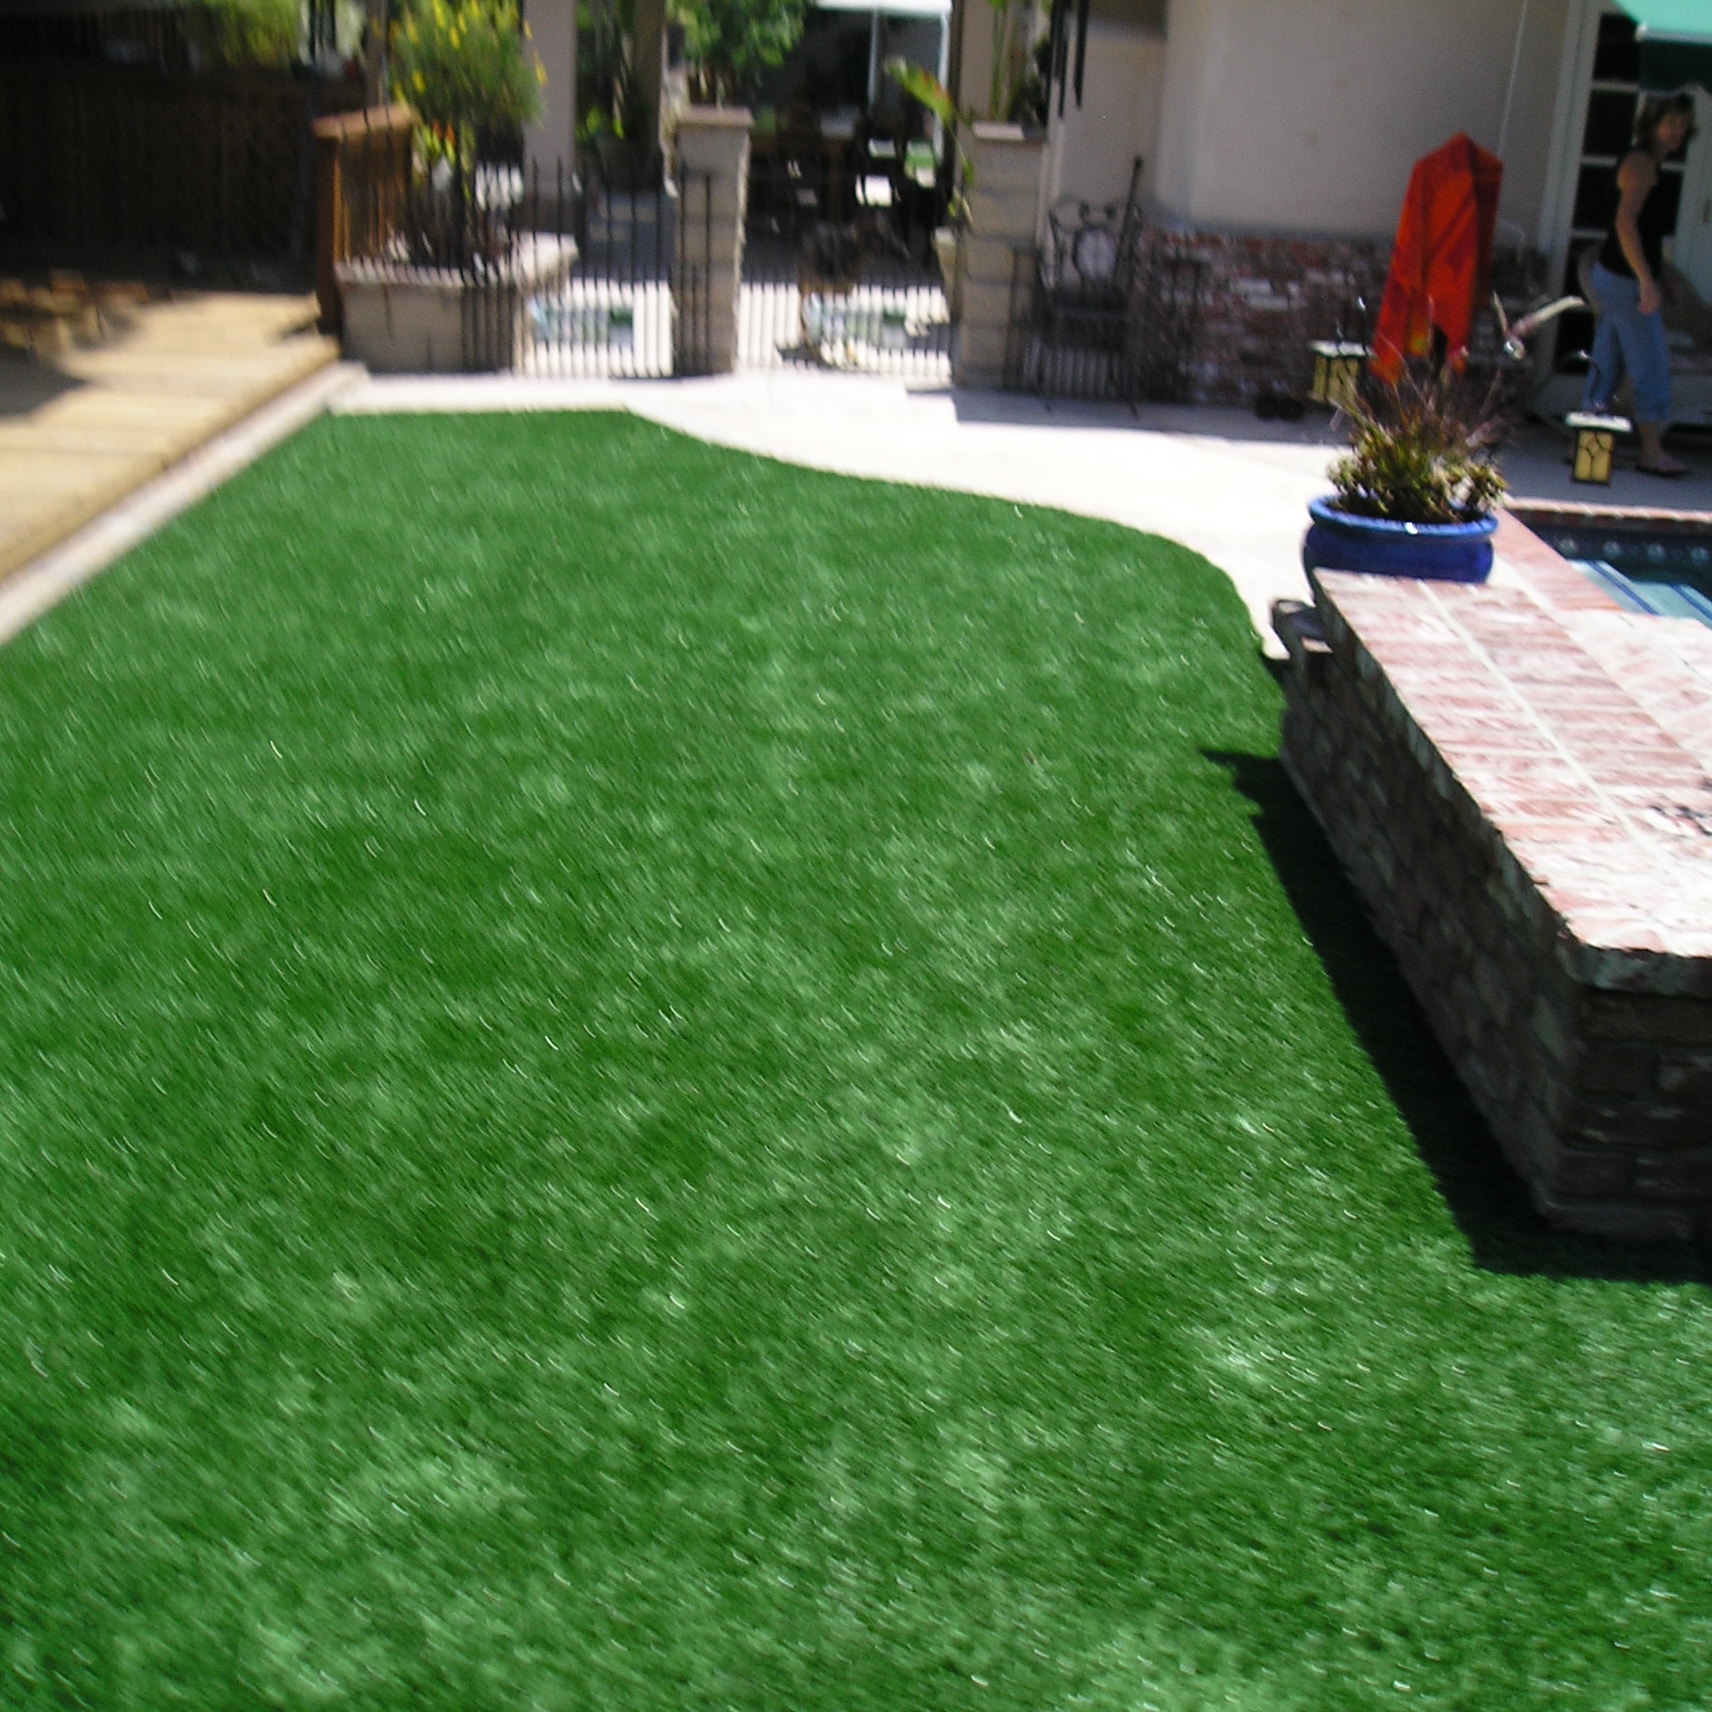 Super Natural 60 artificial grass,fake grass,synthetic grass,grass carpet,artificial grass rug